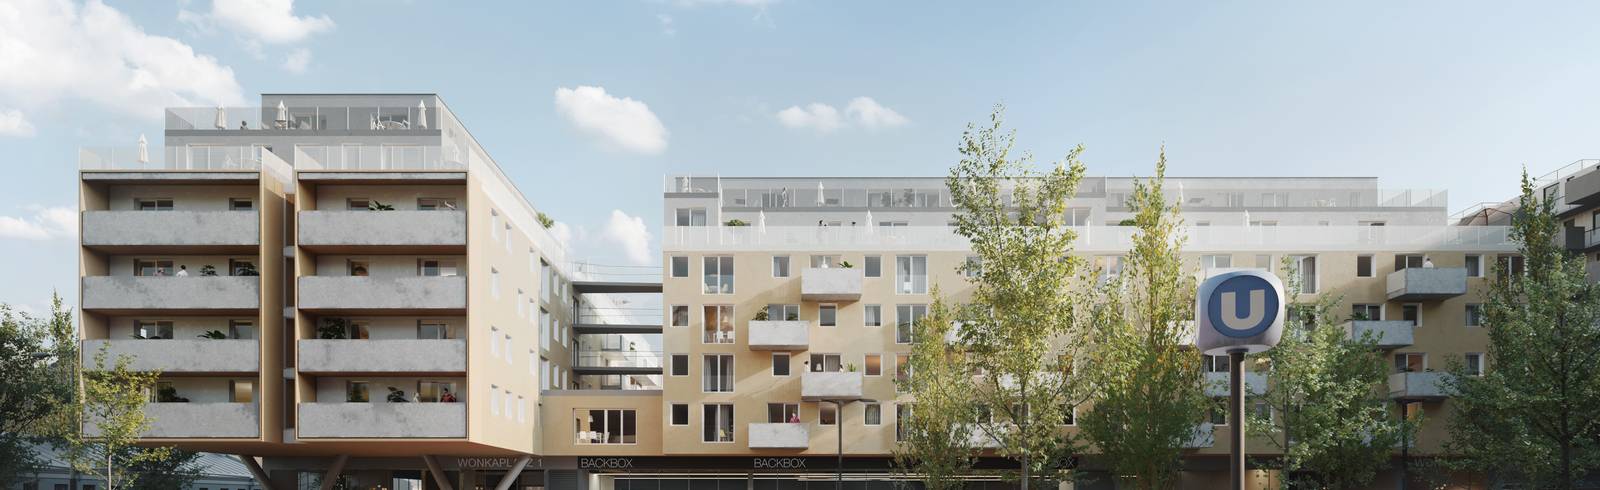 Donaustadt: Spatenstich für neues Wohnbauprojekt